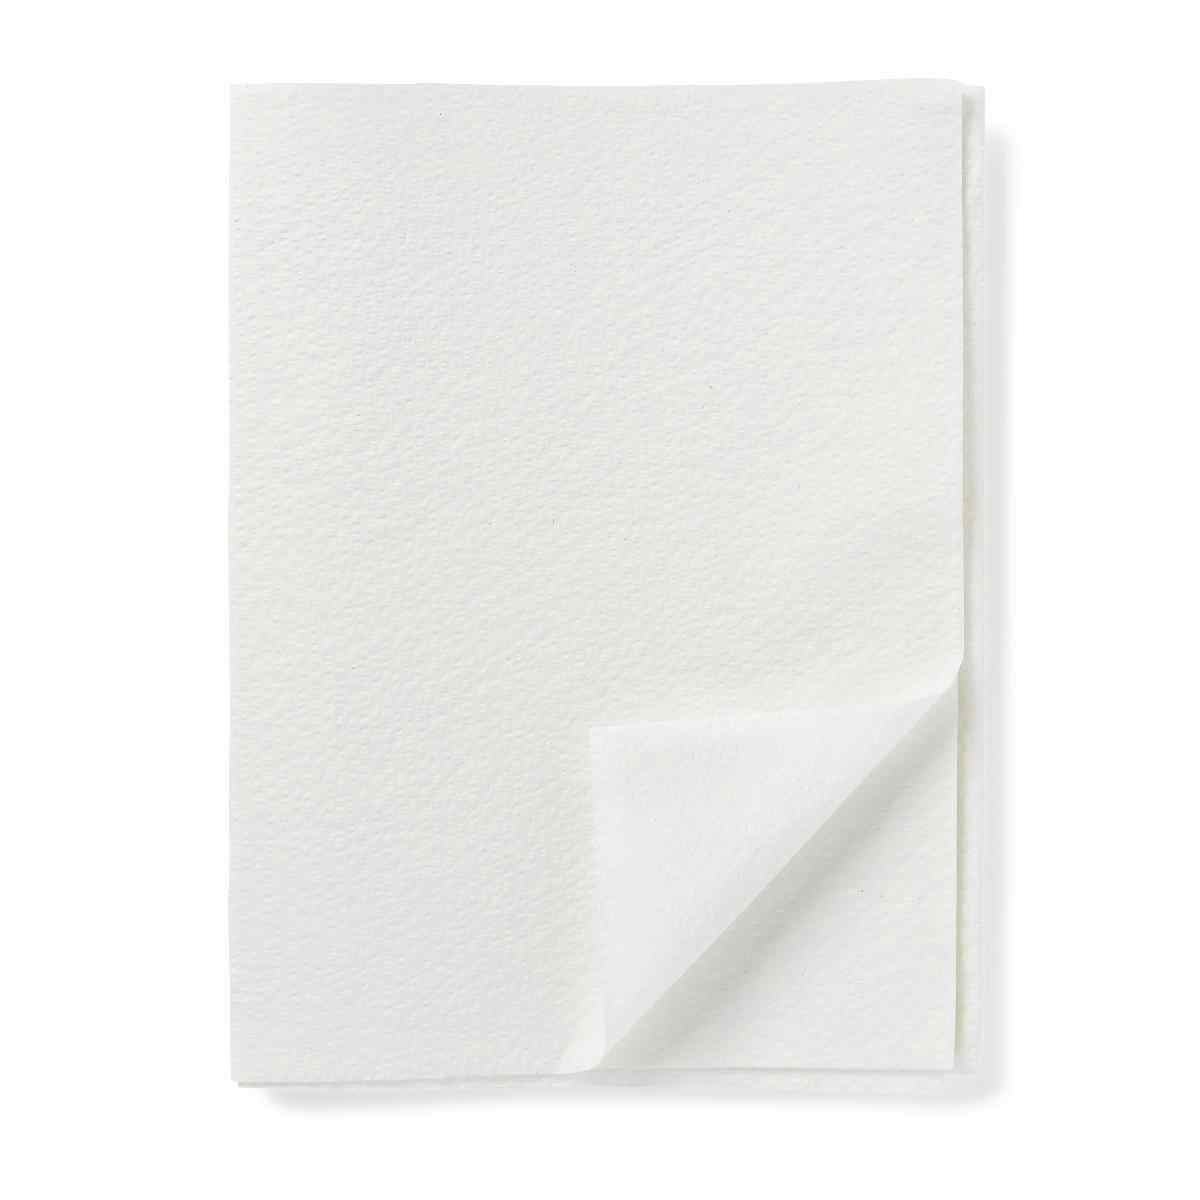 Medline Deluxe 2-Ply Tissue Drape Sheets, NON24339B, White - 40" X 72" - Case of 50